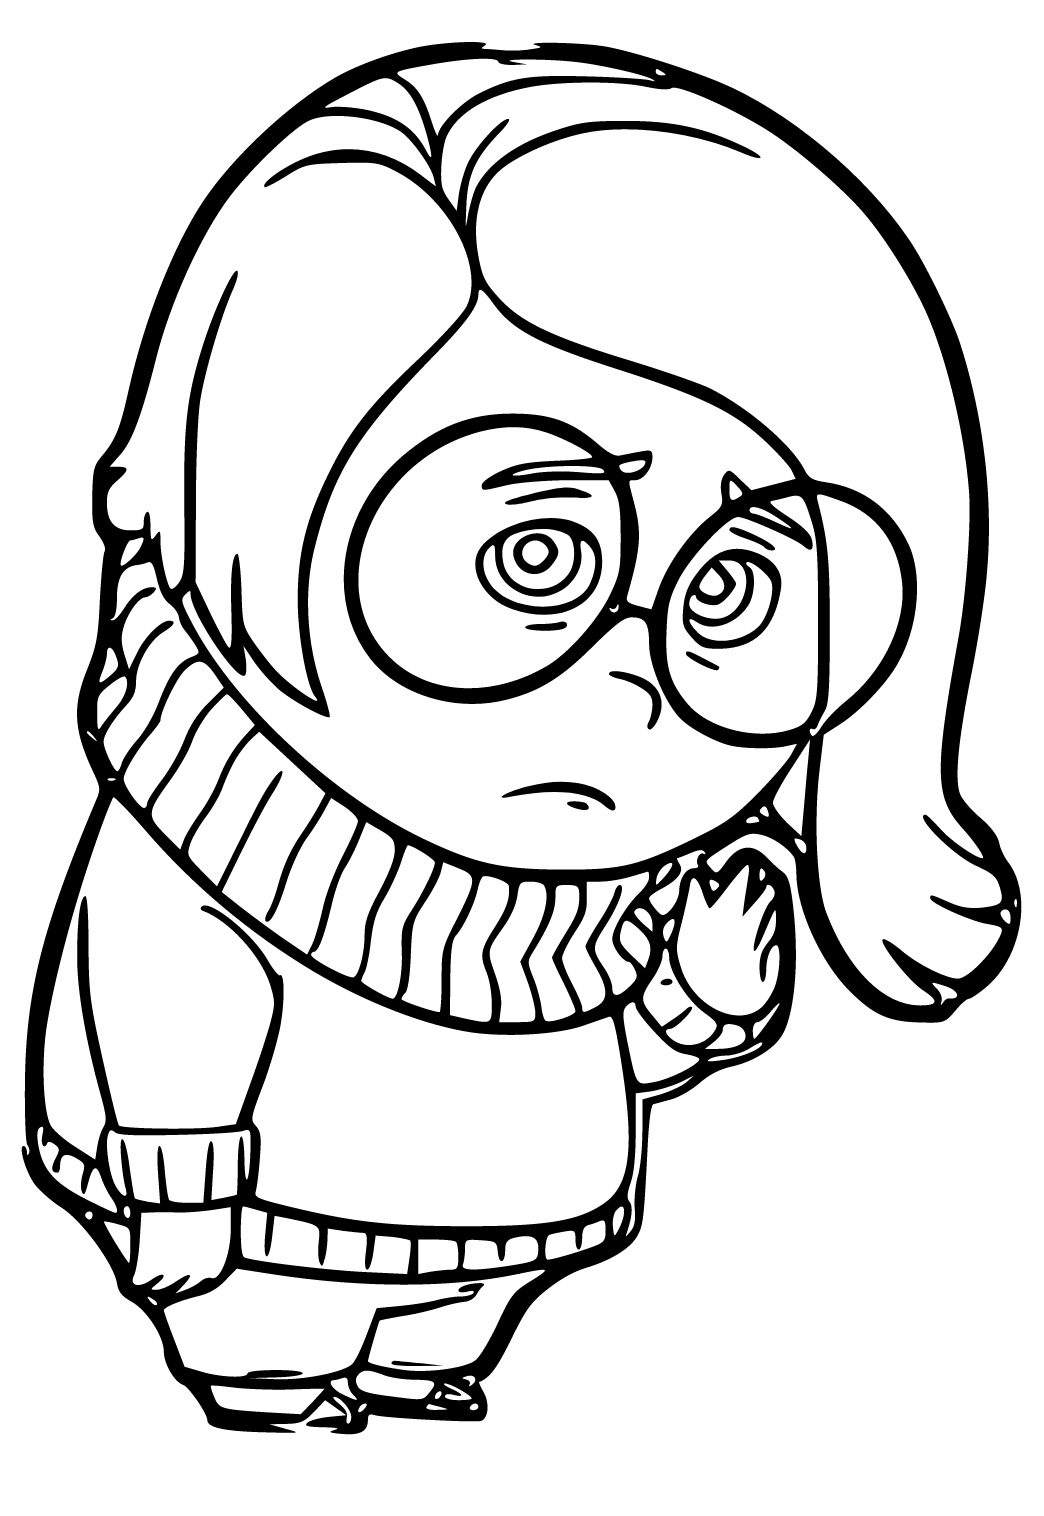 Dibujo e imagen triste personaje para colorear y imprimir gratis para adultos y niãos